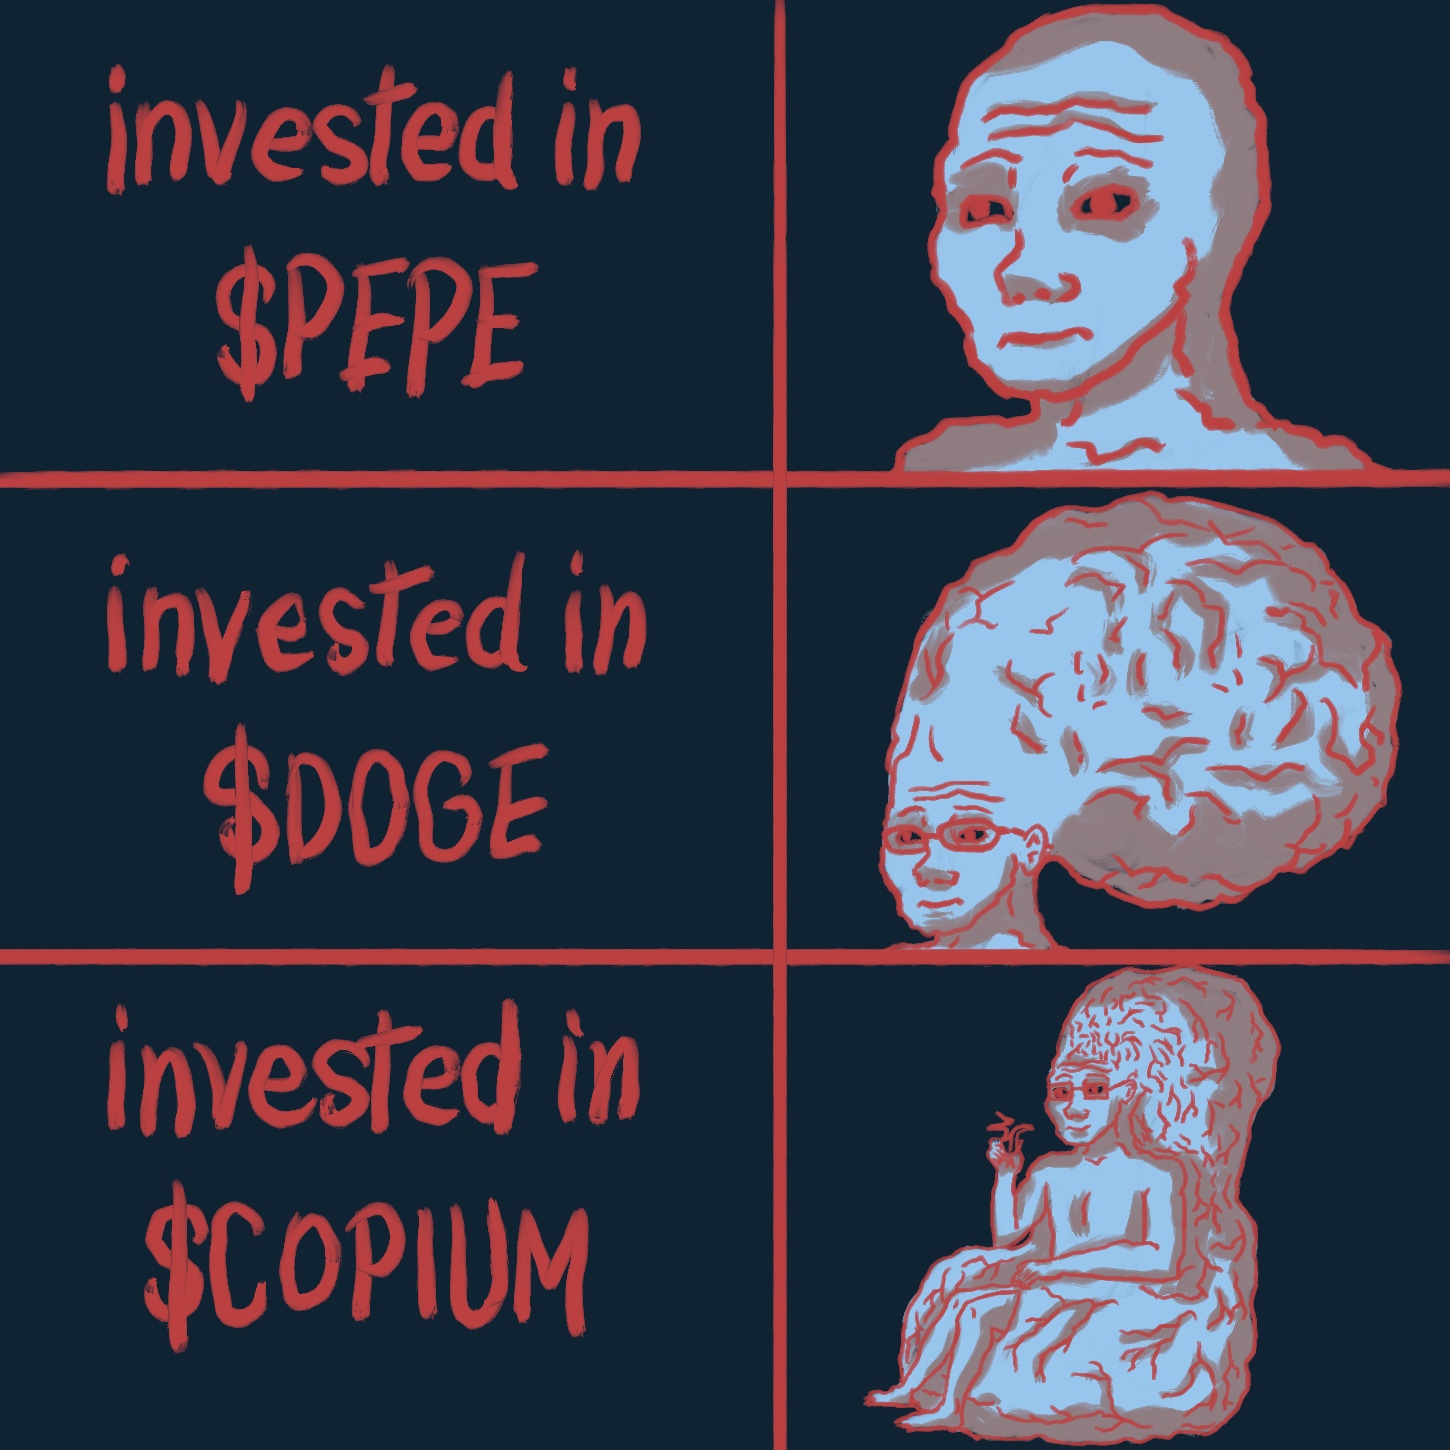 Comprar copium comunidade forte com memes